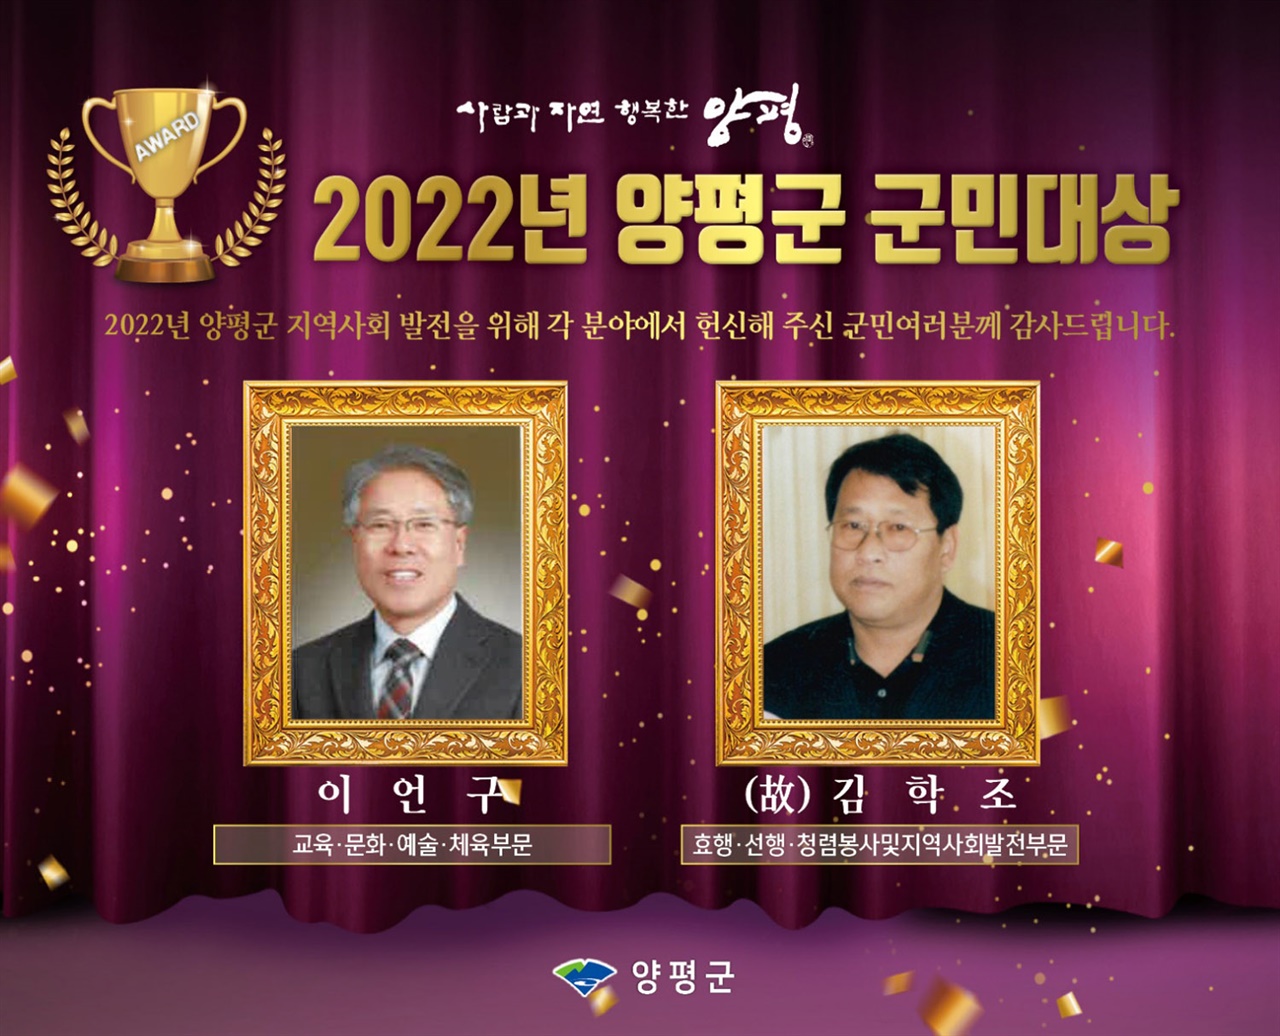 경기 양평군의 2022년 양평군민대상 수상자로 이언구 목사와 고(故) 김학조씨가 선정됐다.